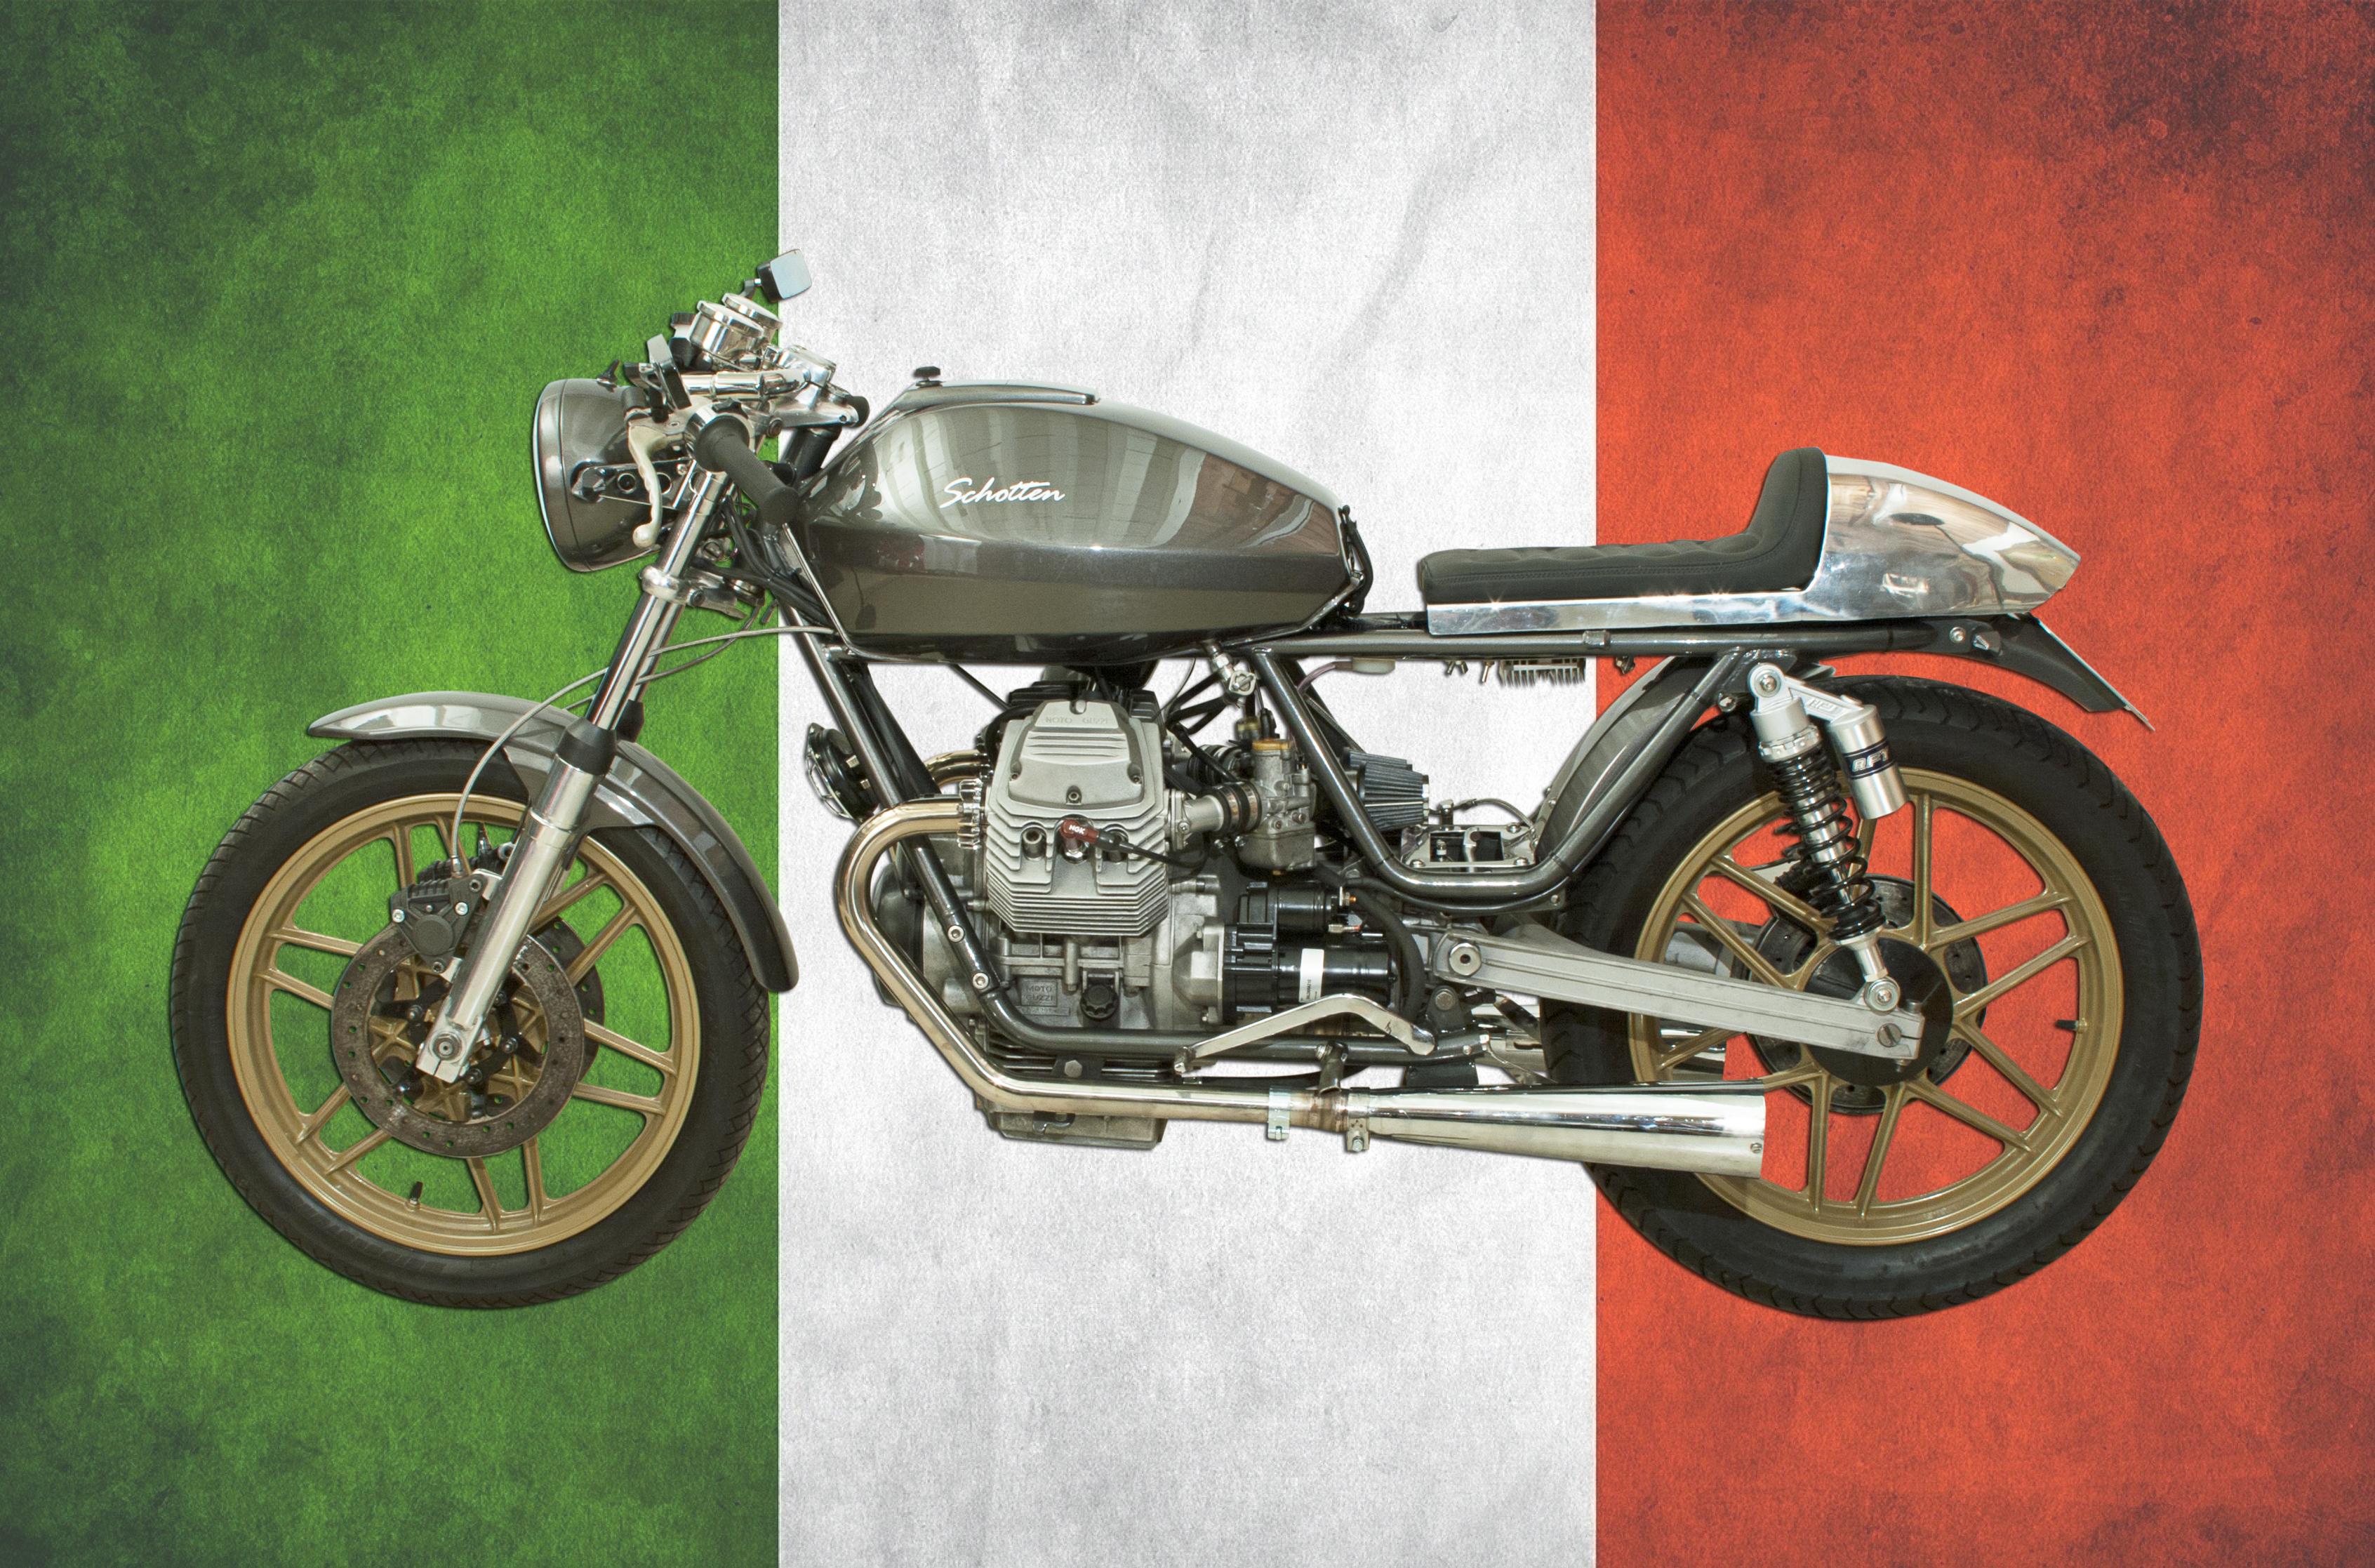 V50 Moto Guzzi Cafe Racer. 
Ein wunderbarer Moto Guzzi Café Racer. Diese maßgeschneiderte Moto Guzzi V50 ist ein leichtes Motorrad mit 500 cm³ Hubraum, das sich durch einen niedrig montierten Lenker und einen nach hinten versetzten Sitz